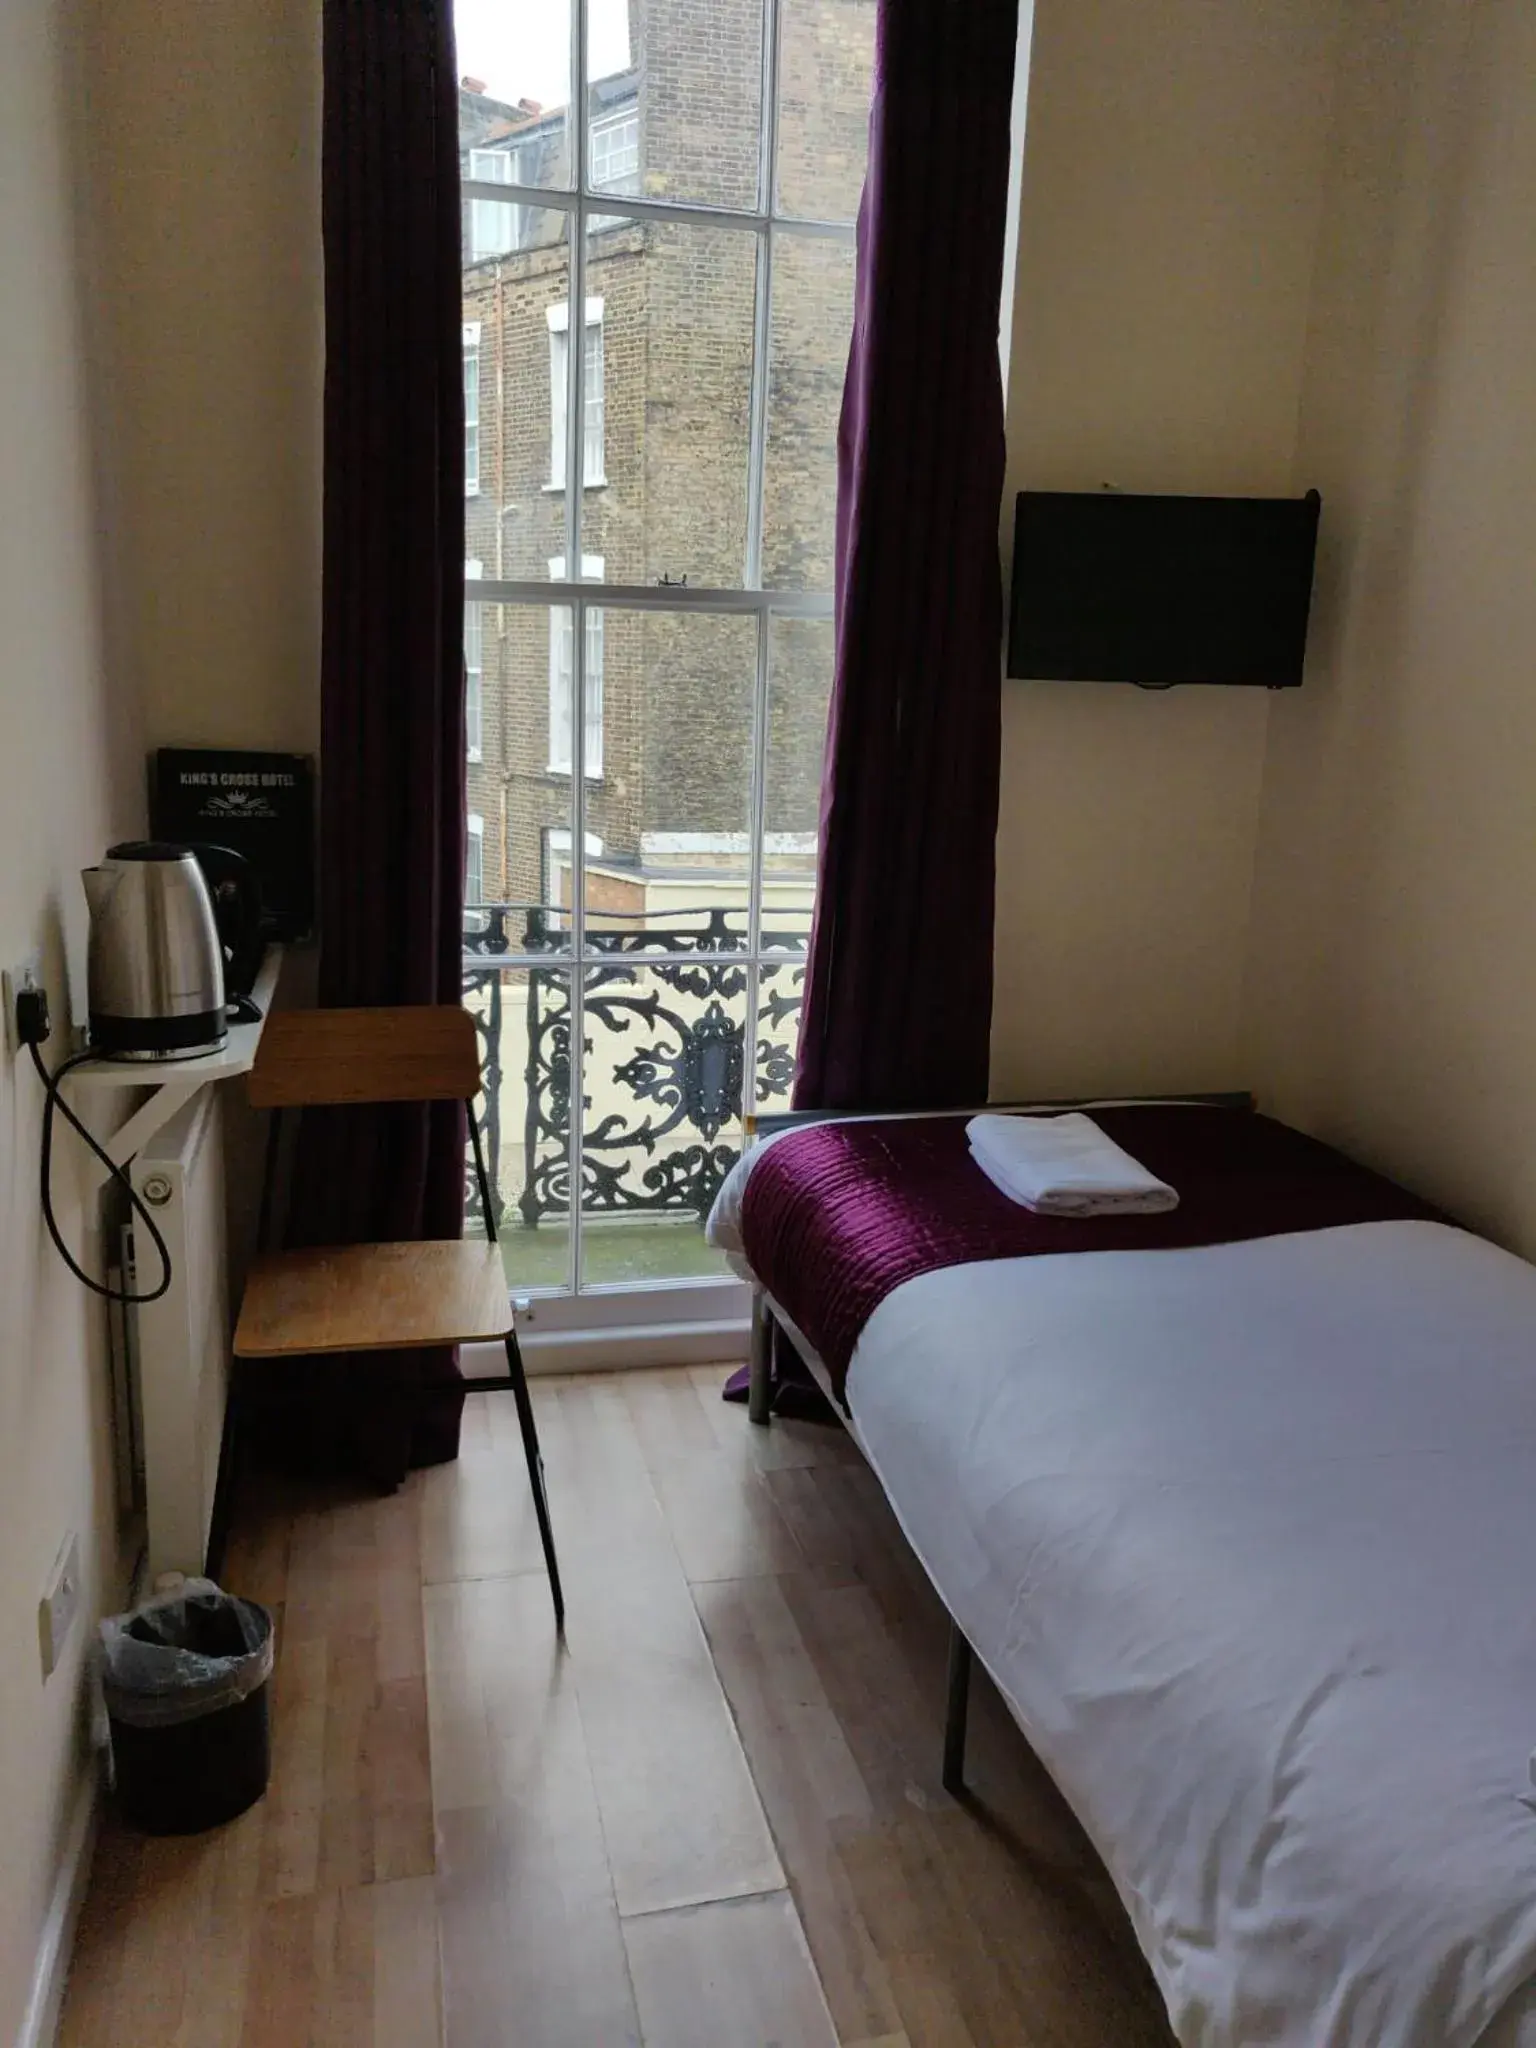 Bed in Kings Cross Hotel London